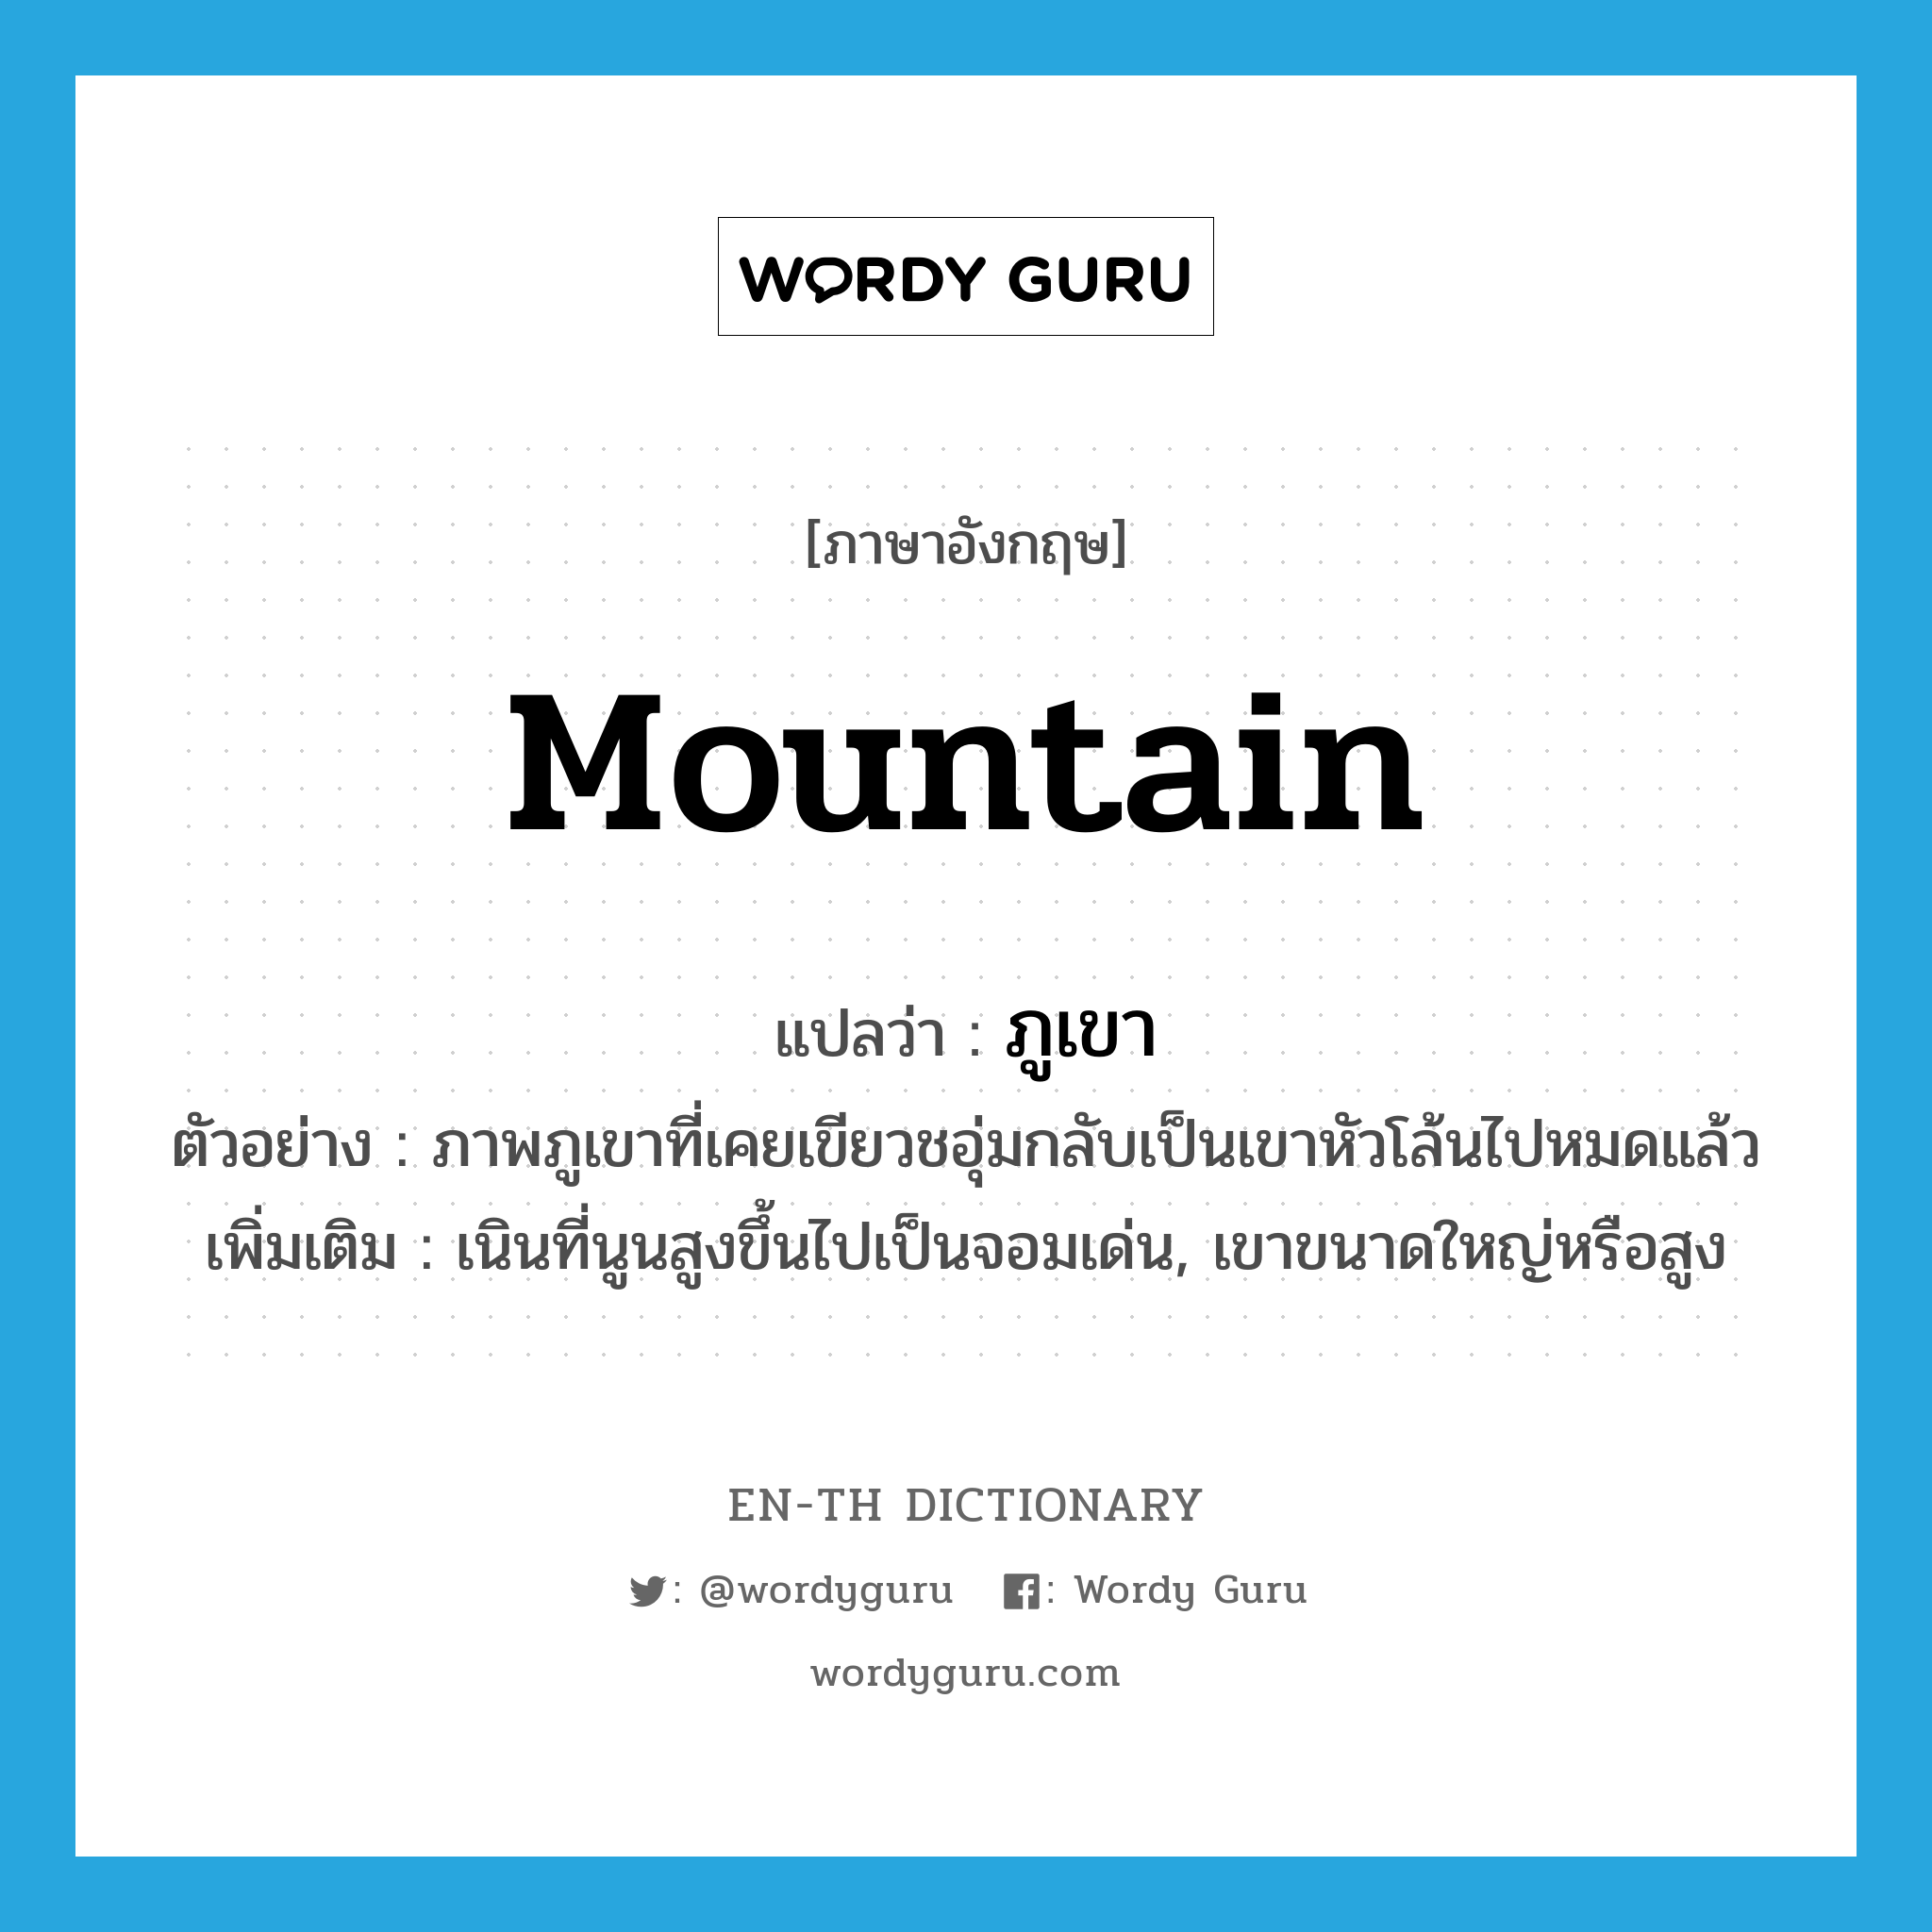 mountain แปลว่า?, คำศัพท์ภาษาอังกฤษ mountain แปลว่า ภูเขา ประเภท N ตัวอย่าง ภาพภูเขาที่เคยเขียวชอุ่มกลับเป็นเขาหัวโล้นไปหมดแล้ว เพิ่มเติม เนินที่นูนสูงขึ้นไปเป็นจอมเด่น, เขาขนาดใหญ่หรือสูง หมวด N